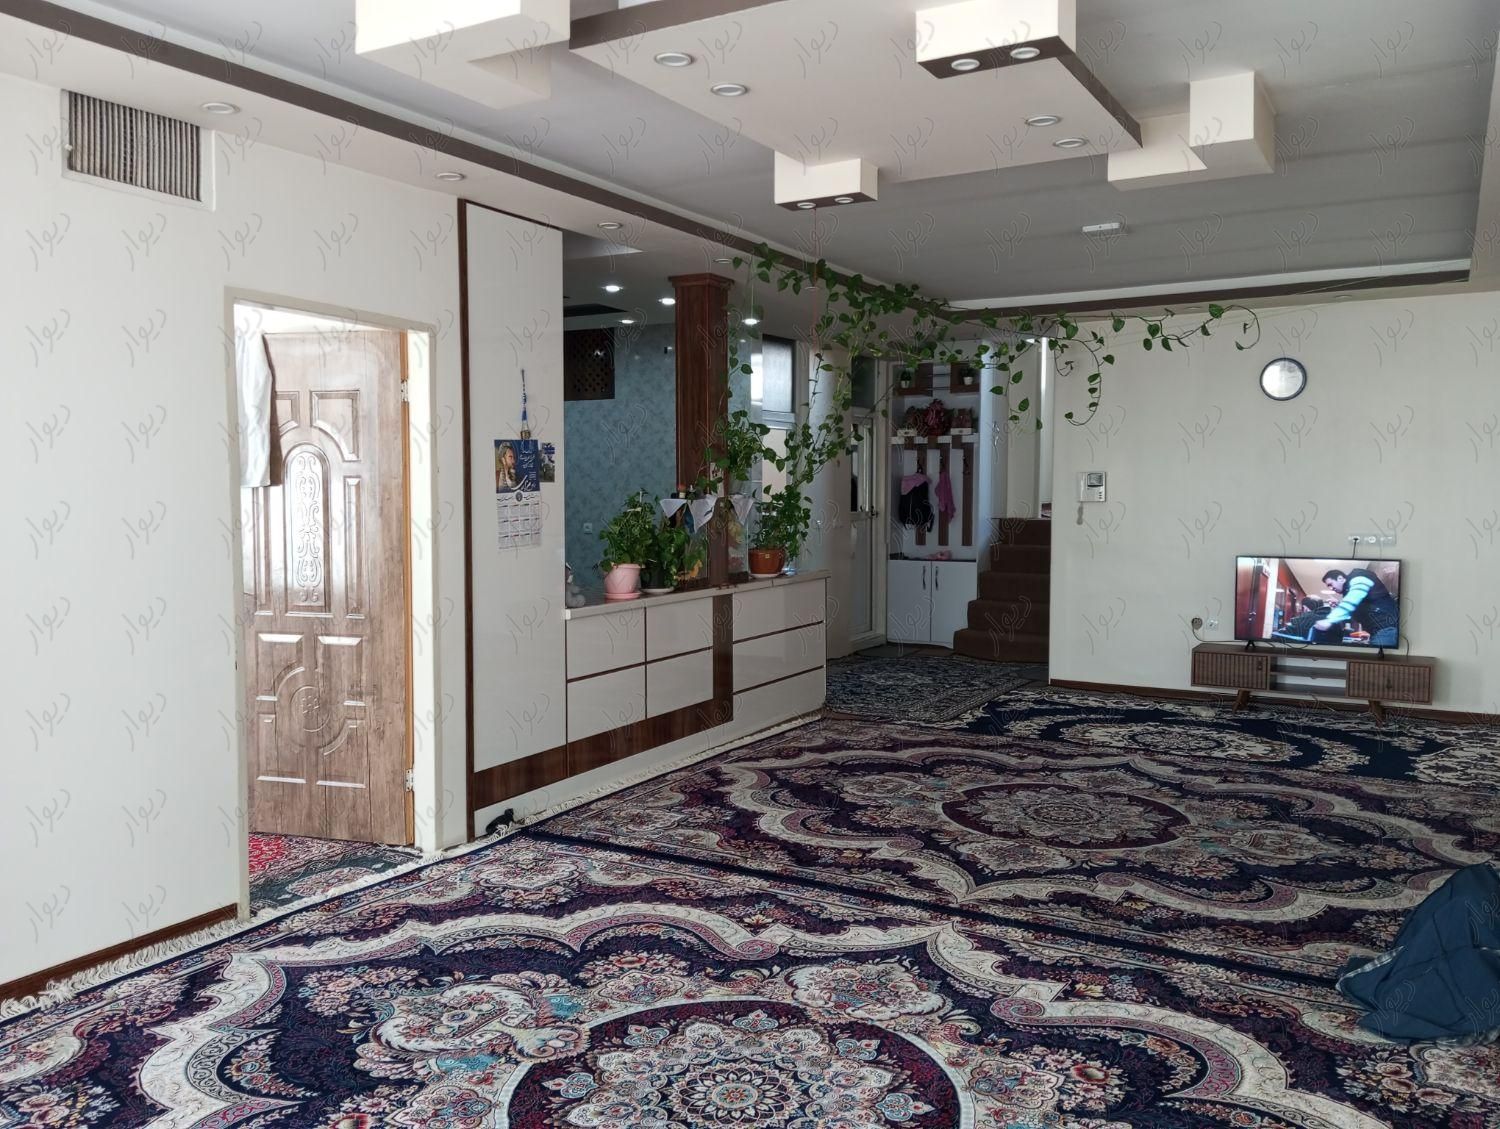 منزل 2 طبقه/200متری /بر عمان سامانی/دوکله کوچه|فروش خانه و ویلا|اصفهان, عمان سامانی|دیوار